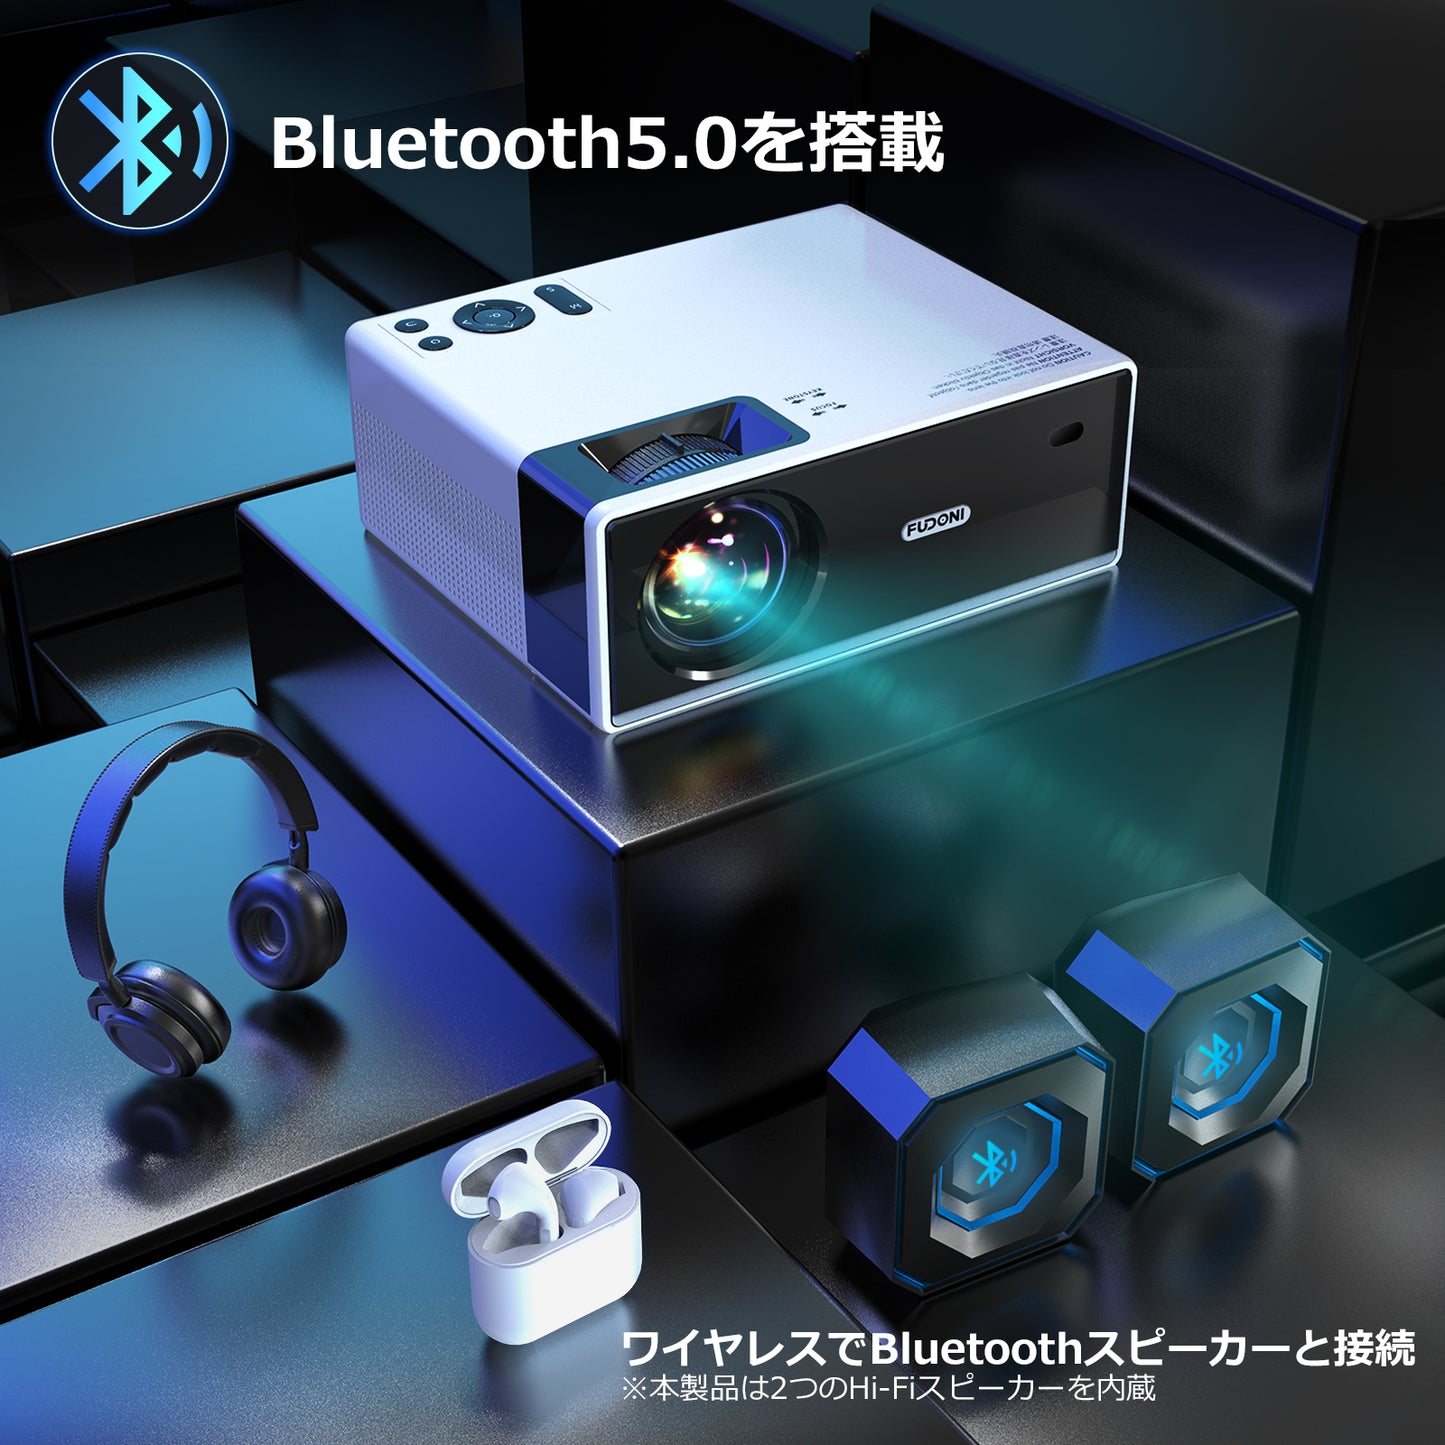 FUDONIプロジェクター WiFi Bluetooth フルHD 1080P 高輝度12000LM 4K対応 300"大画面 小型 モバイル 高速5G&2.4GWi-Fi Bluetooth5.0